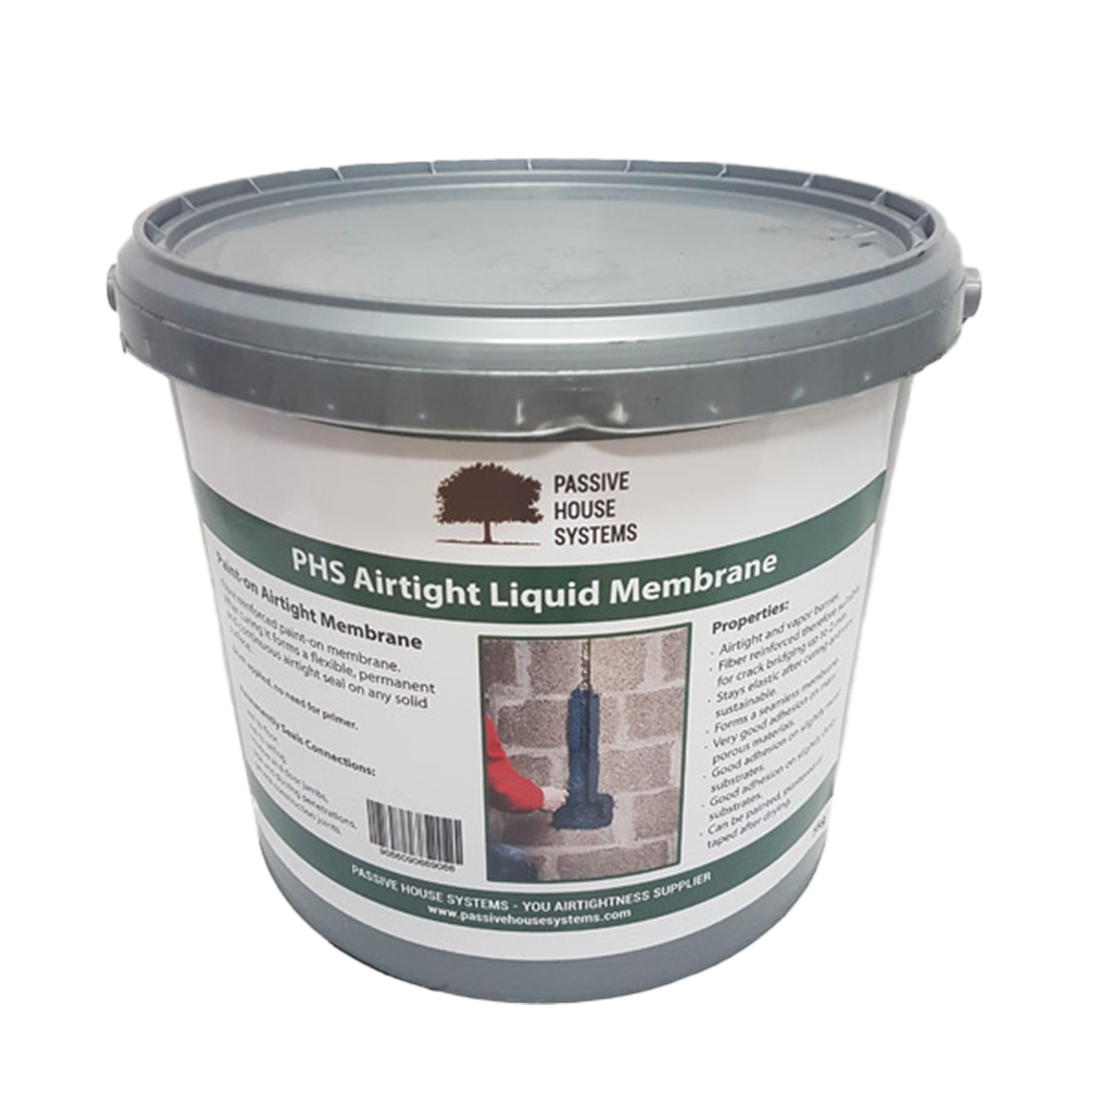 PHS Airtight Liquid Membrane 5kg